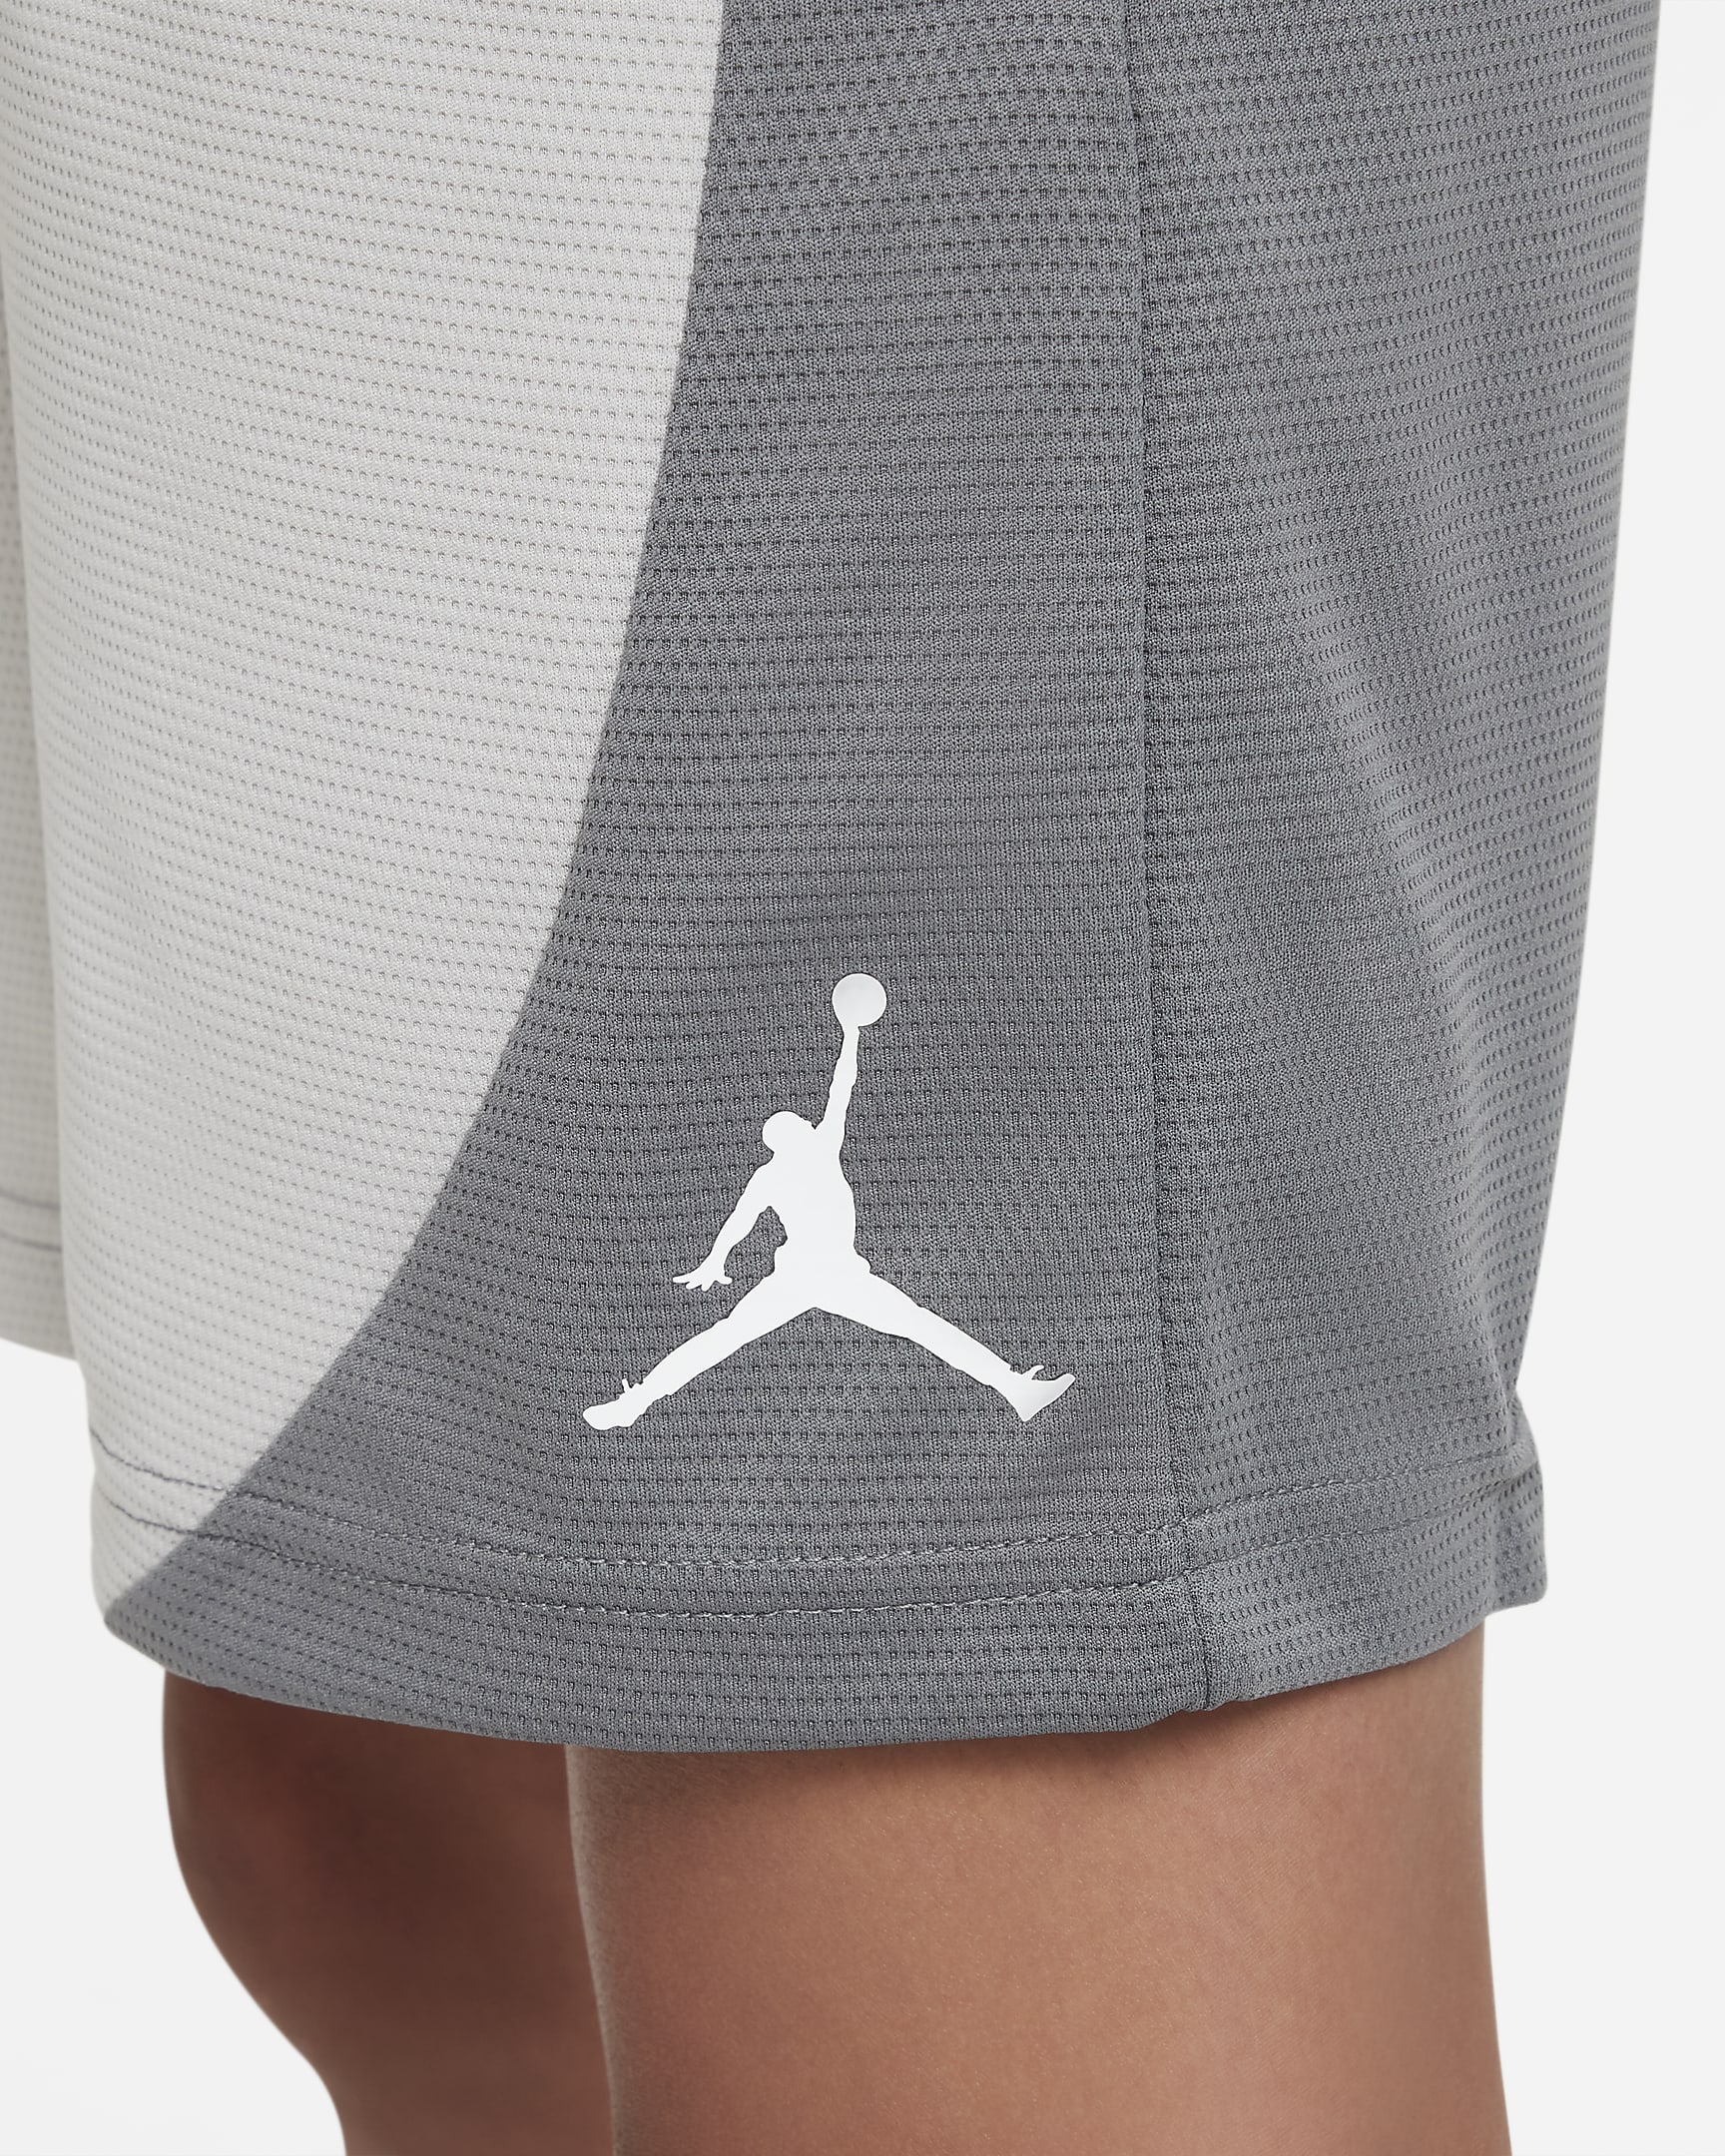 Shorts para niños talla grande Jordan Dri-FIT. Nike.com